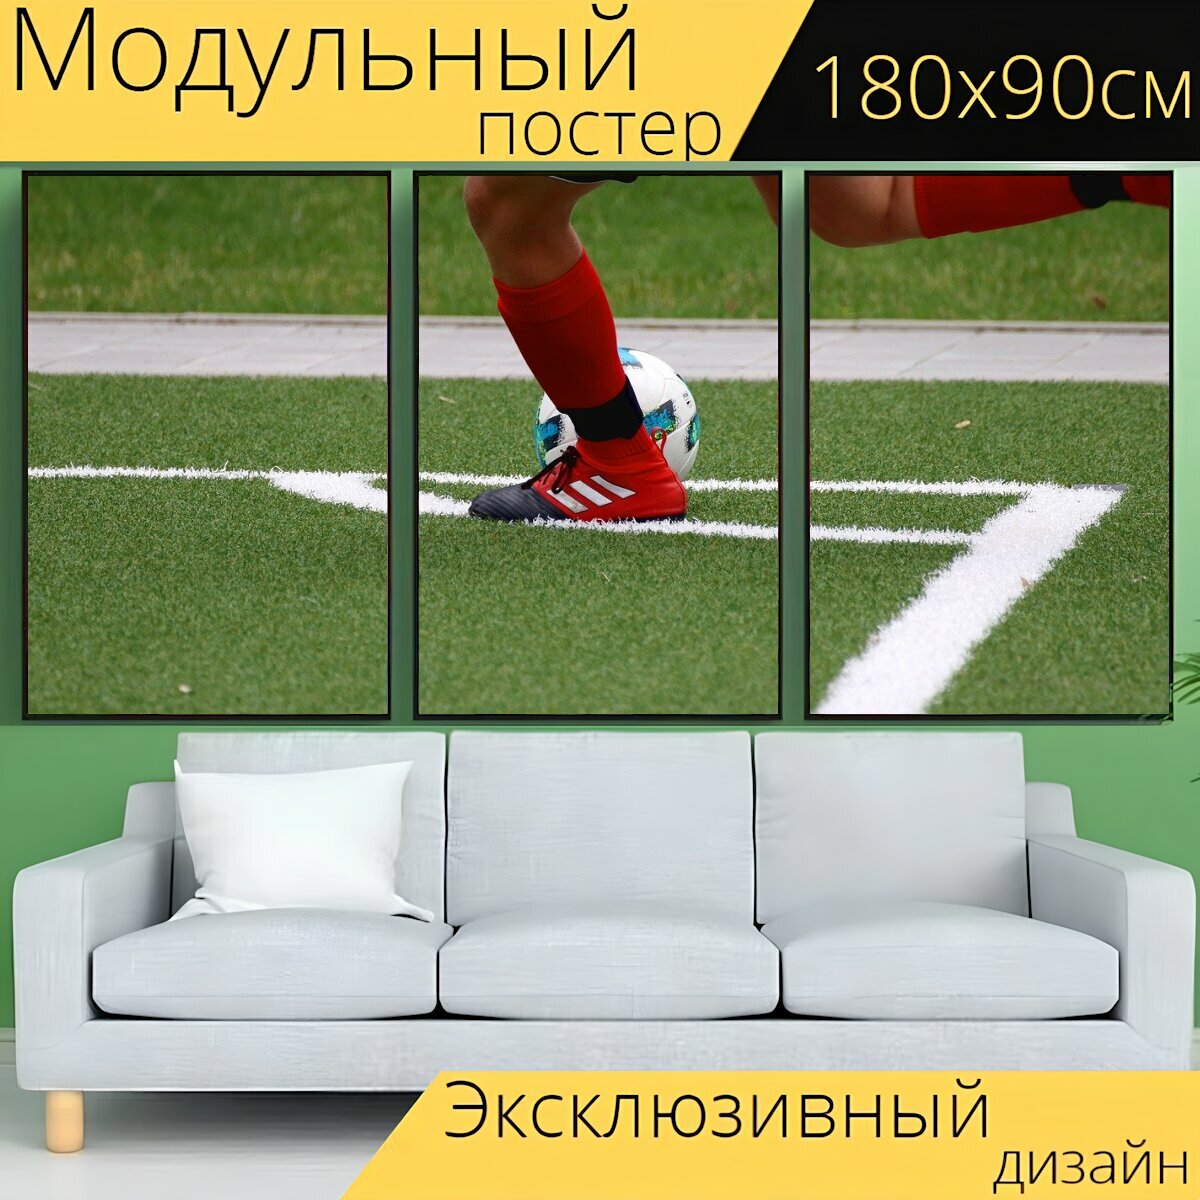 Модульный постер "Футбол, виды спорта, футбольное поле" 180 x 90 см. для интерьера